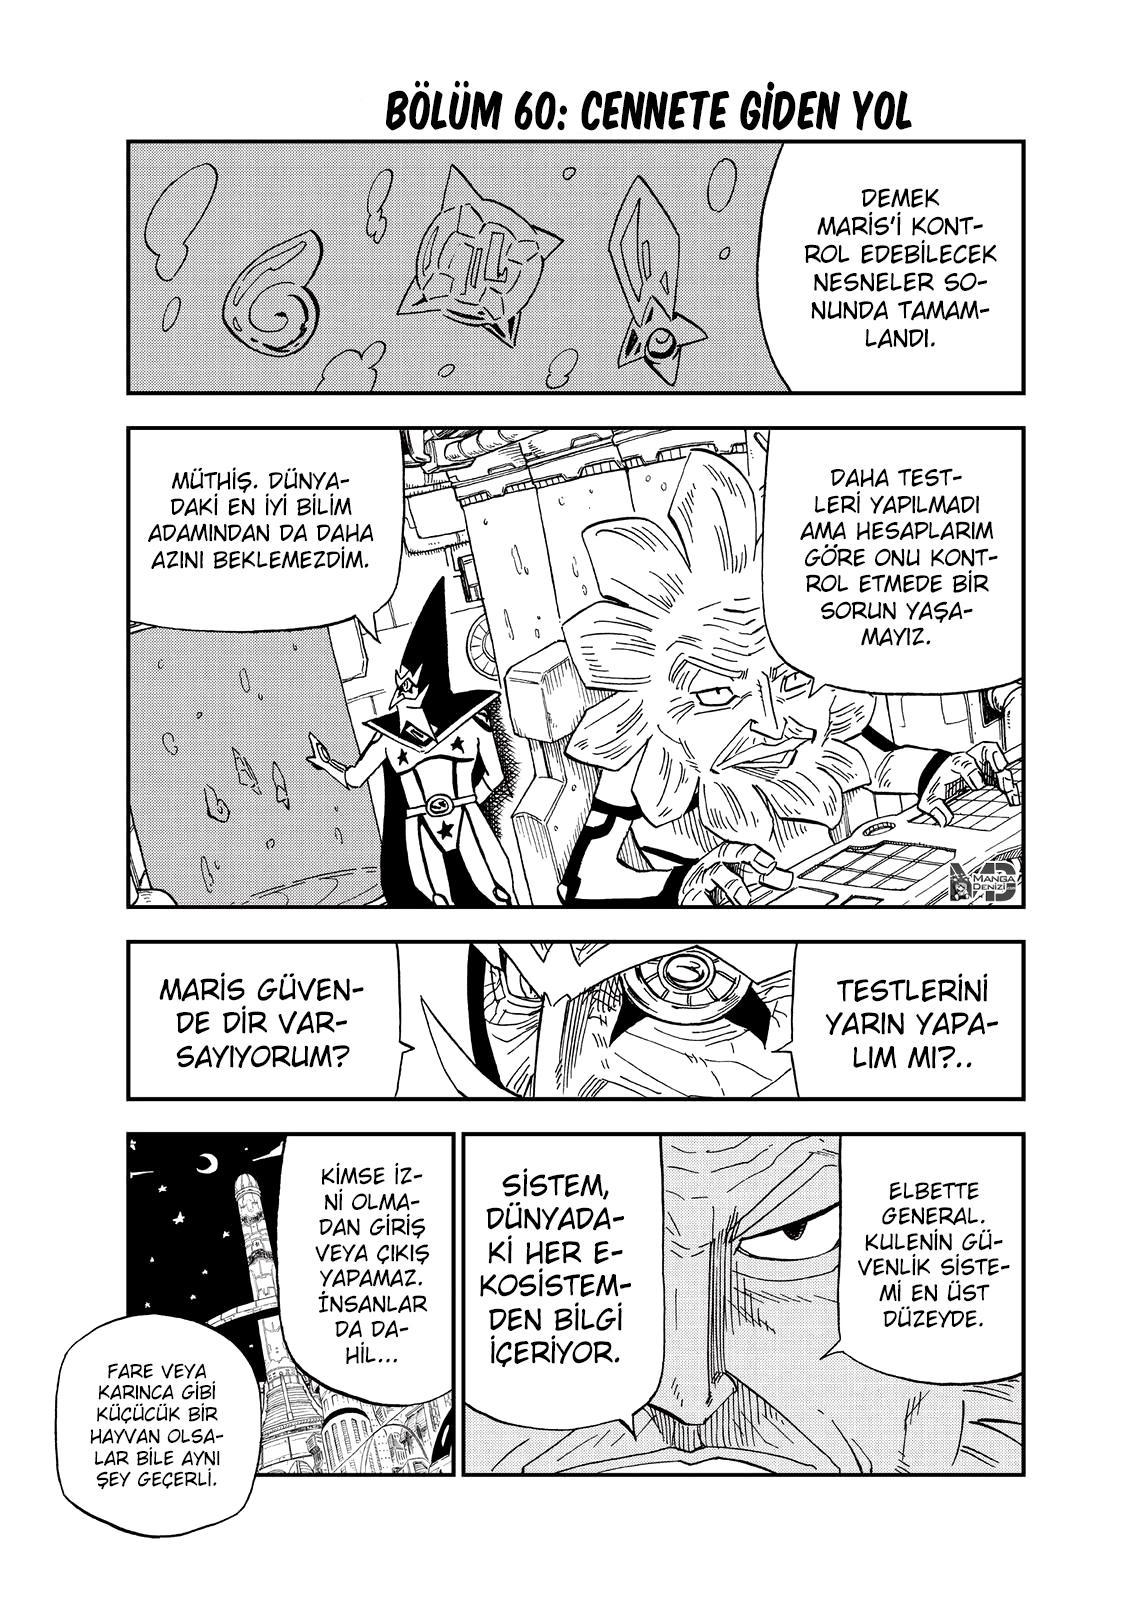 Fairy Tail: Happy's Great Adventure mangasının 60 bölümünün 2. sayfasını okuyorsunuz.